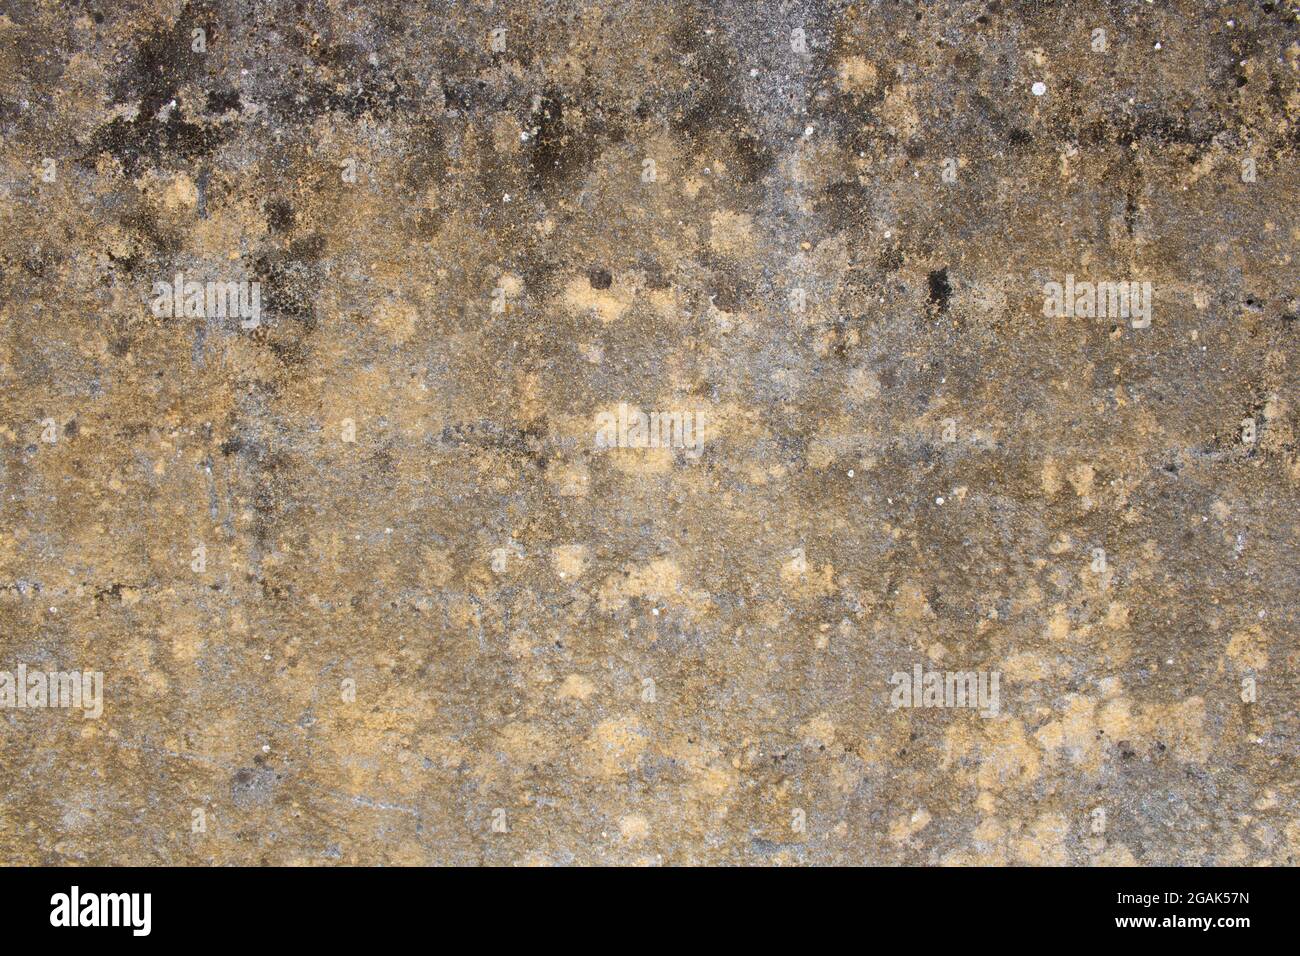 Argilla e cemento parete di fondo. Texture di ruvida parete rustica con spazio copia. Concetto di industria dei materiali e delle costruzioni Foto Stock